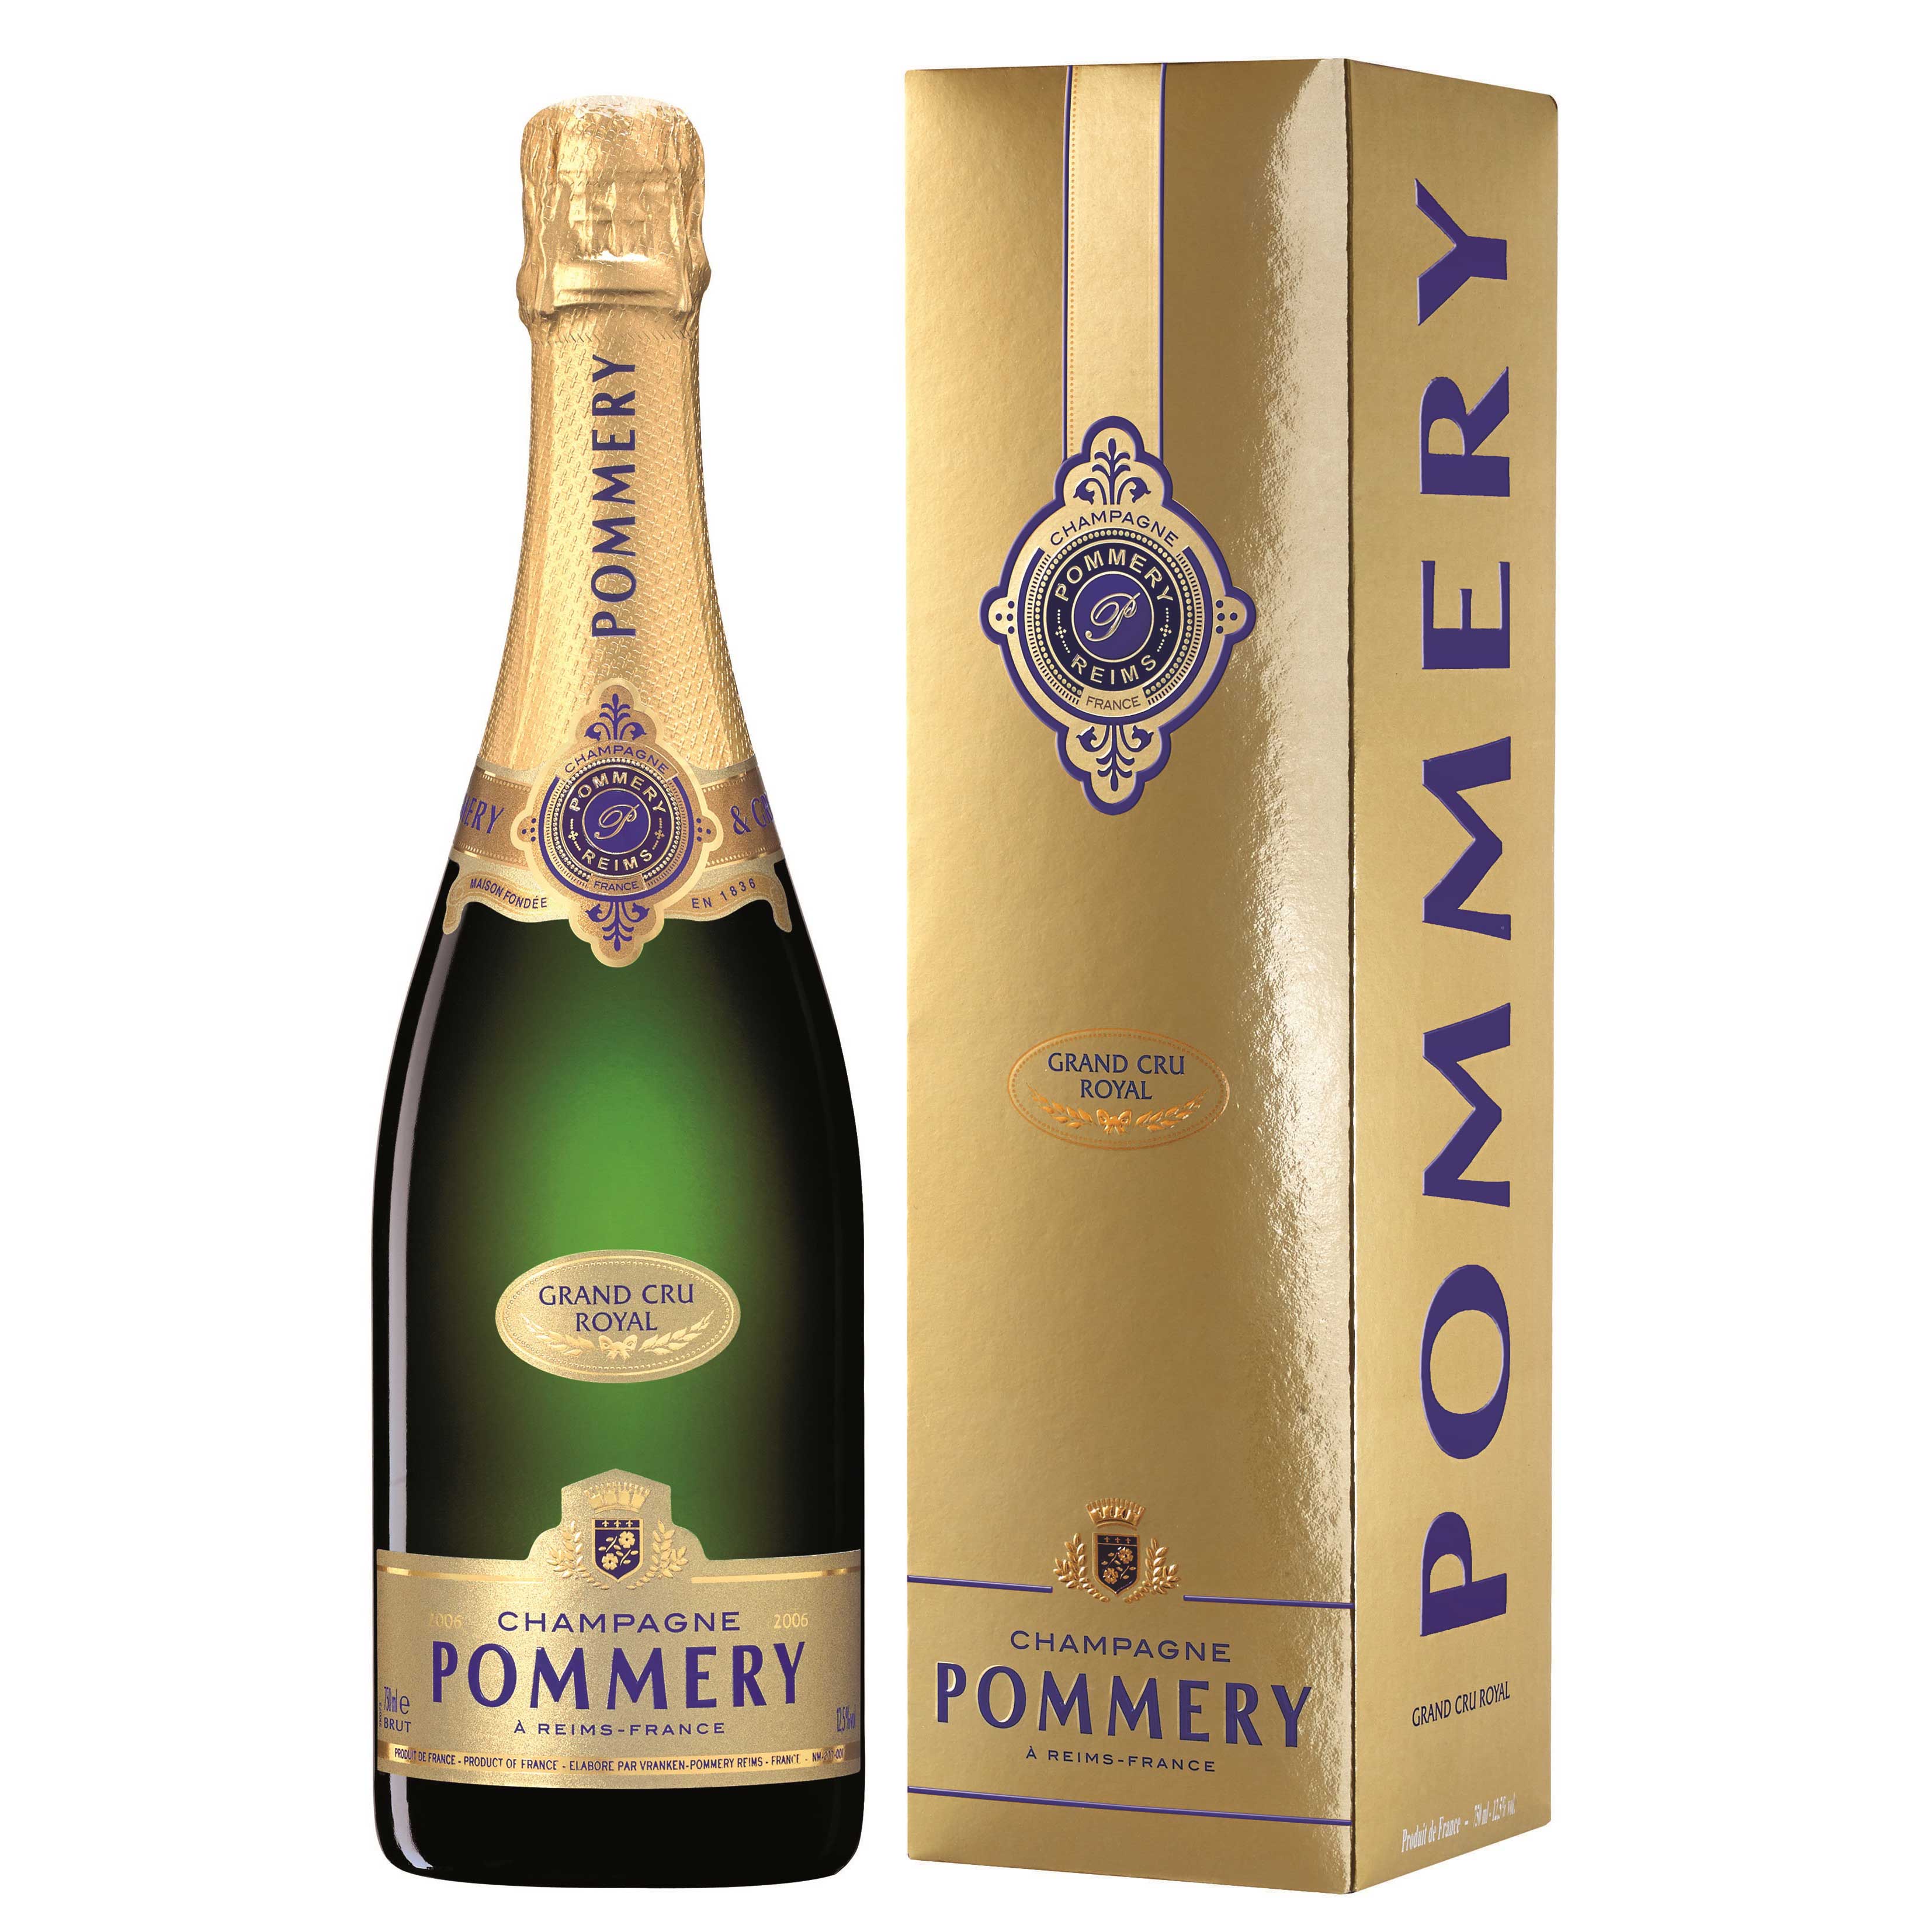 Send Pommery Grand Cru Vintage Champagne 75cl Online